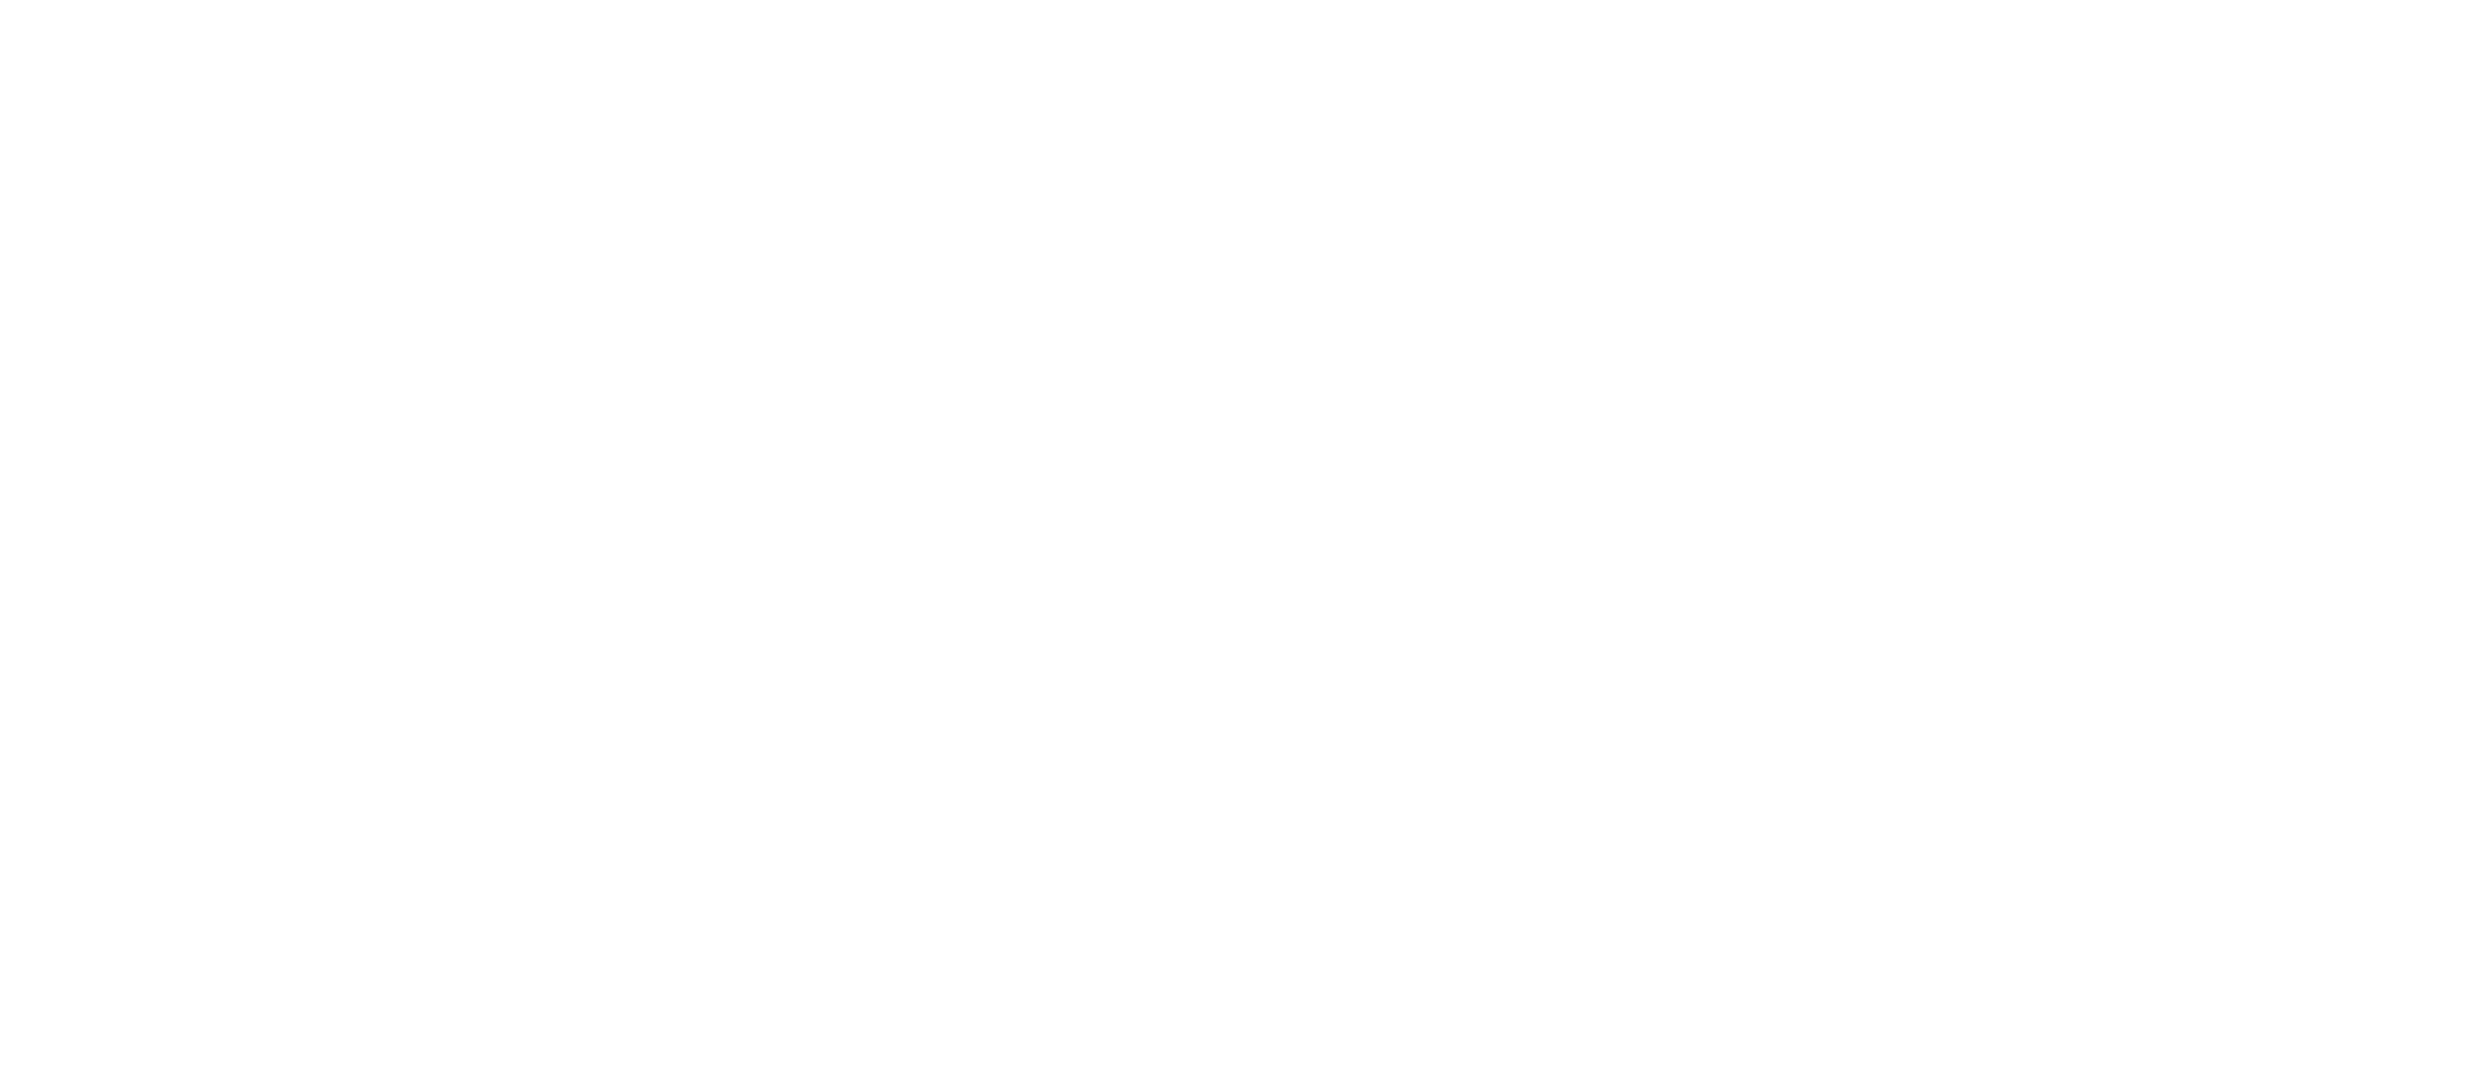 Vinos y manzanilla Bodegas AlonsoVinos y manzanilla Bodegas Alonso